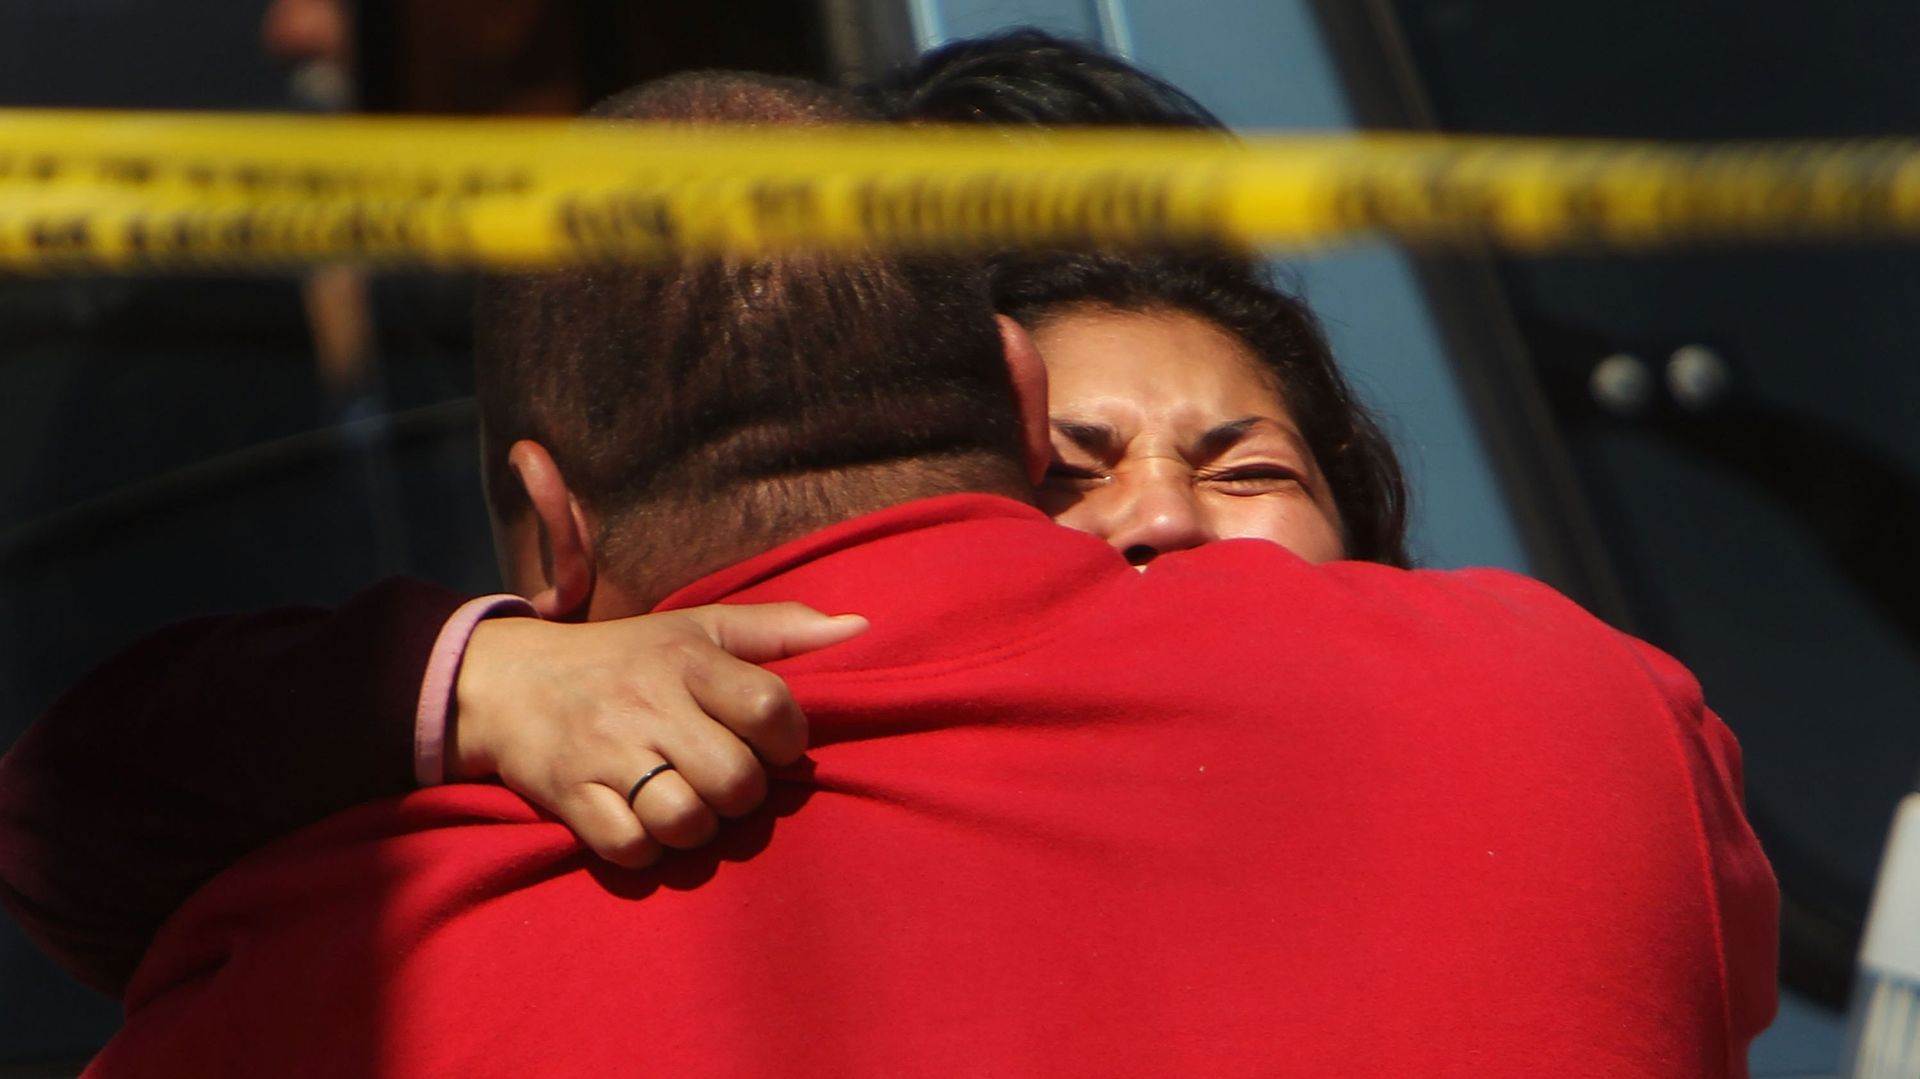 Des membres de la famille pleurent devant une voiture dans laquelle deux hommes gisaient morts le 22 mars 2010 à Juarez, au Mexique. Des crimes liés au trafic de drogue.